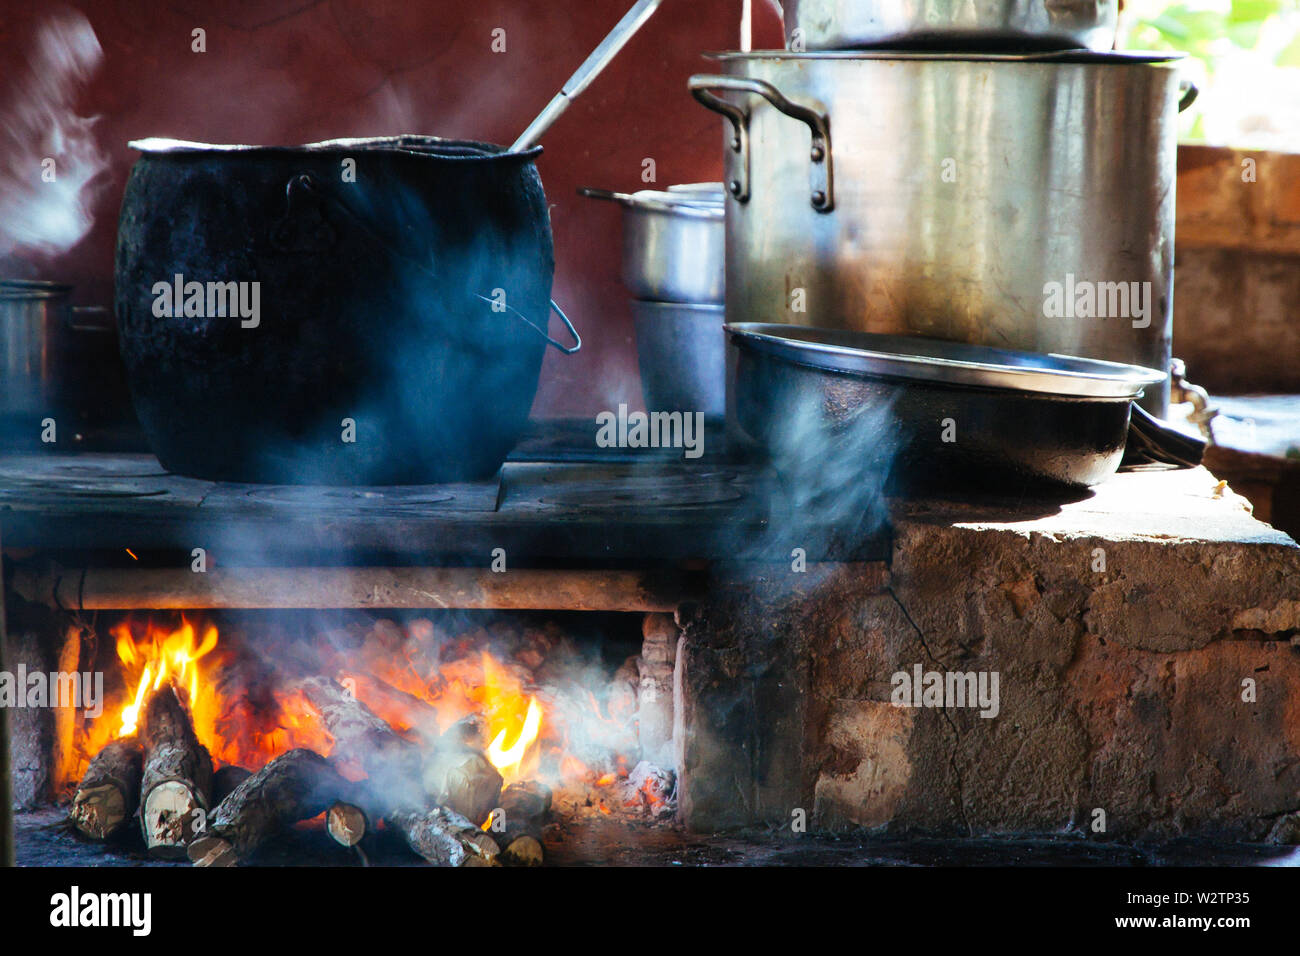 Utensilios de cocina con grandes ollas sobre el fuego Fotografía